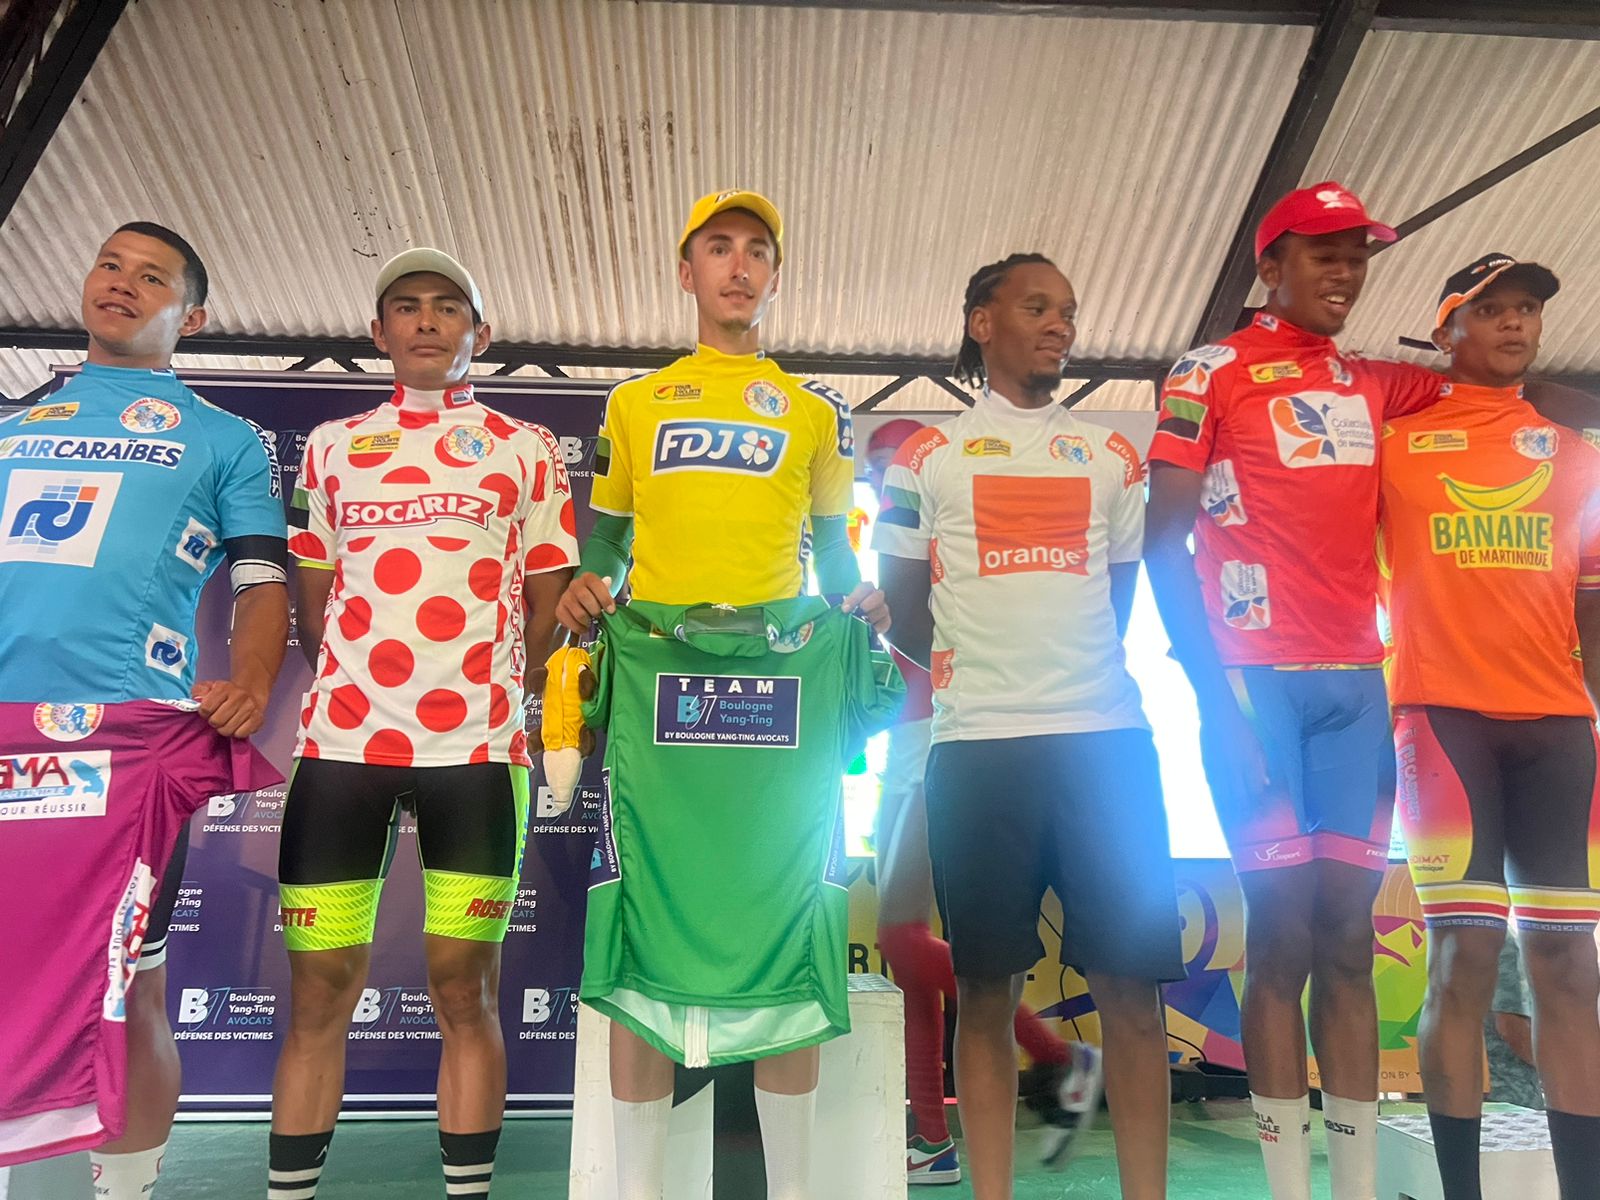     Tour cycliste de Martinique : tous les classements et maillots avant la dernière étape

